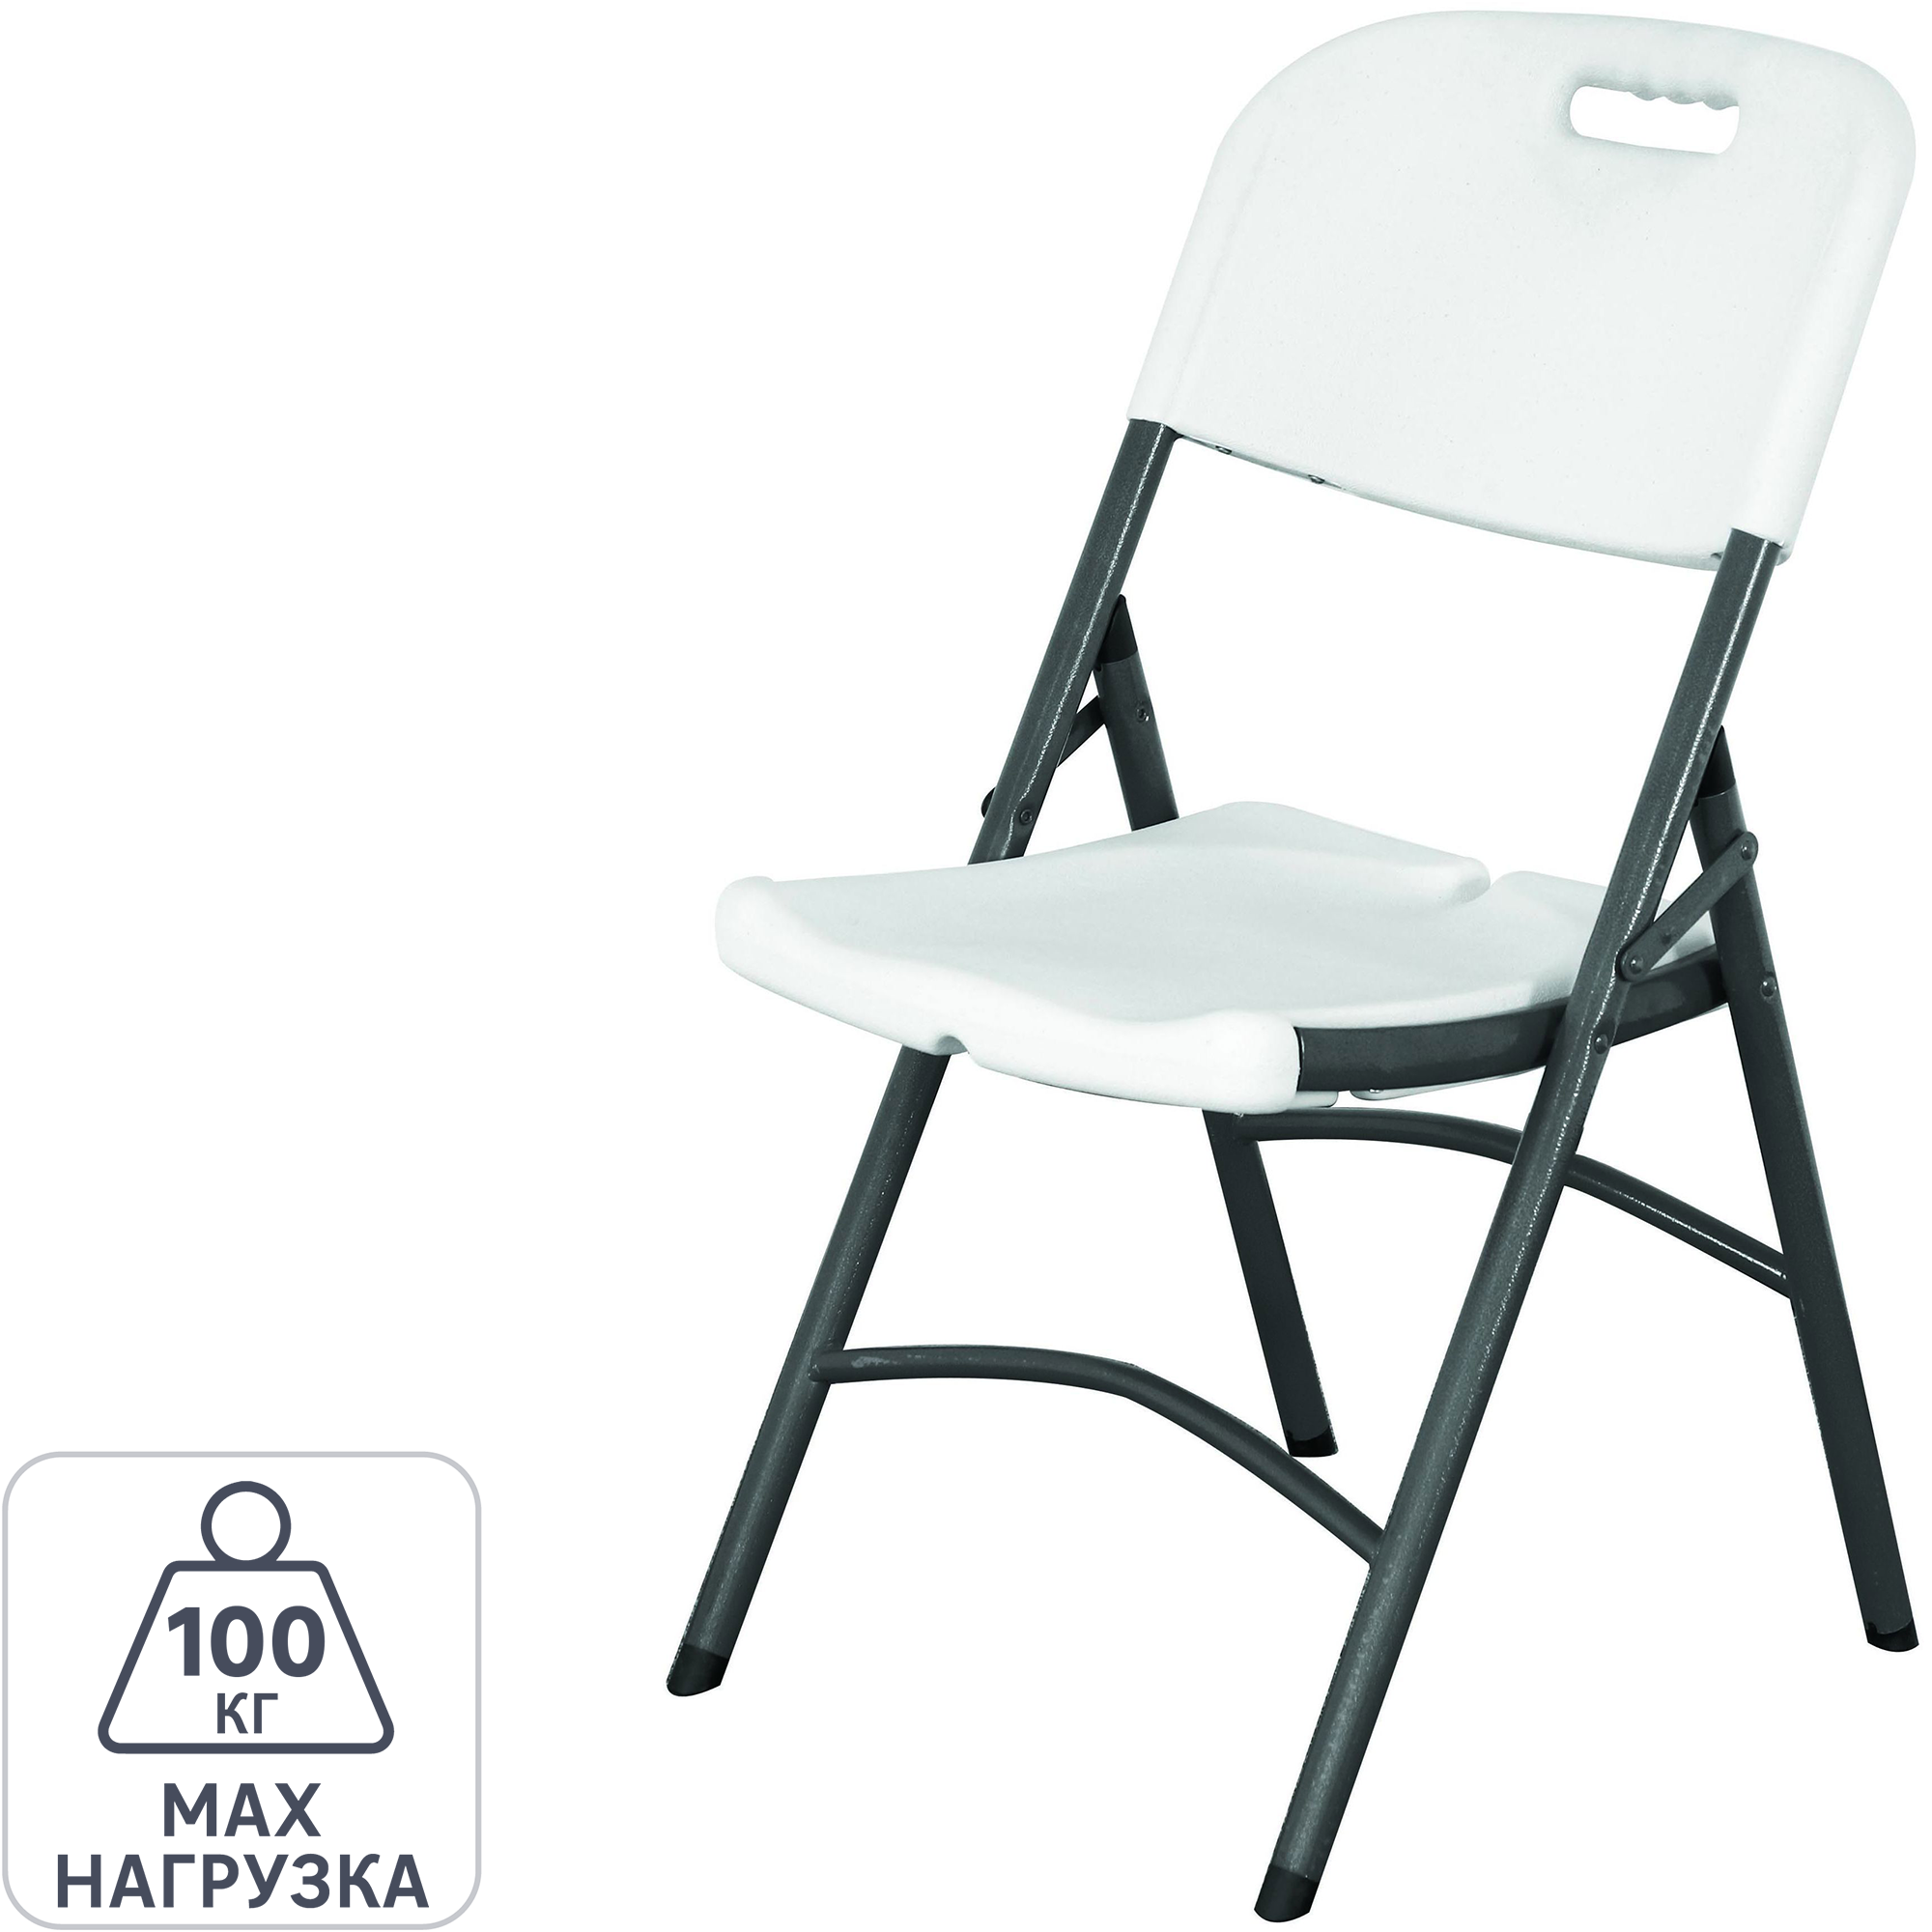 Модельный ряд складных стульев с мягкой спинкой